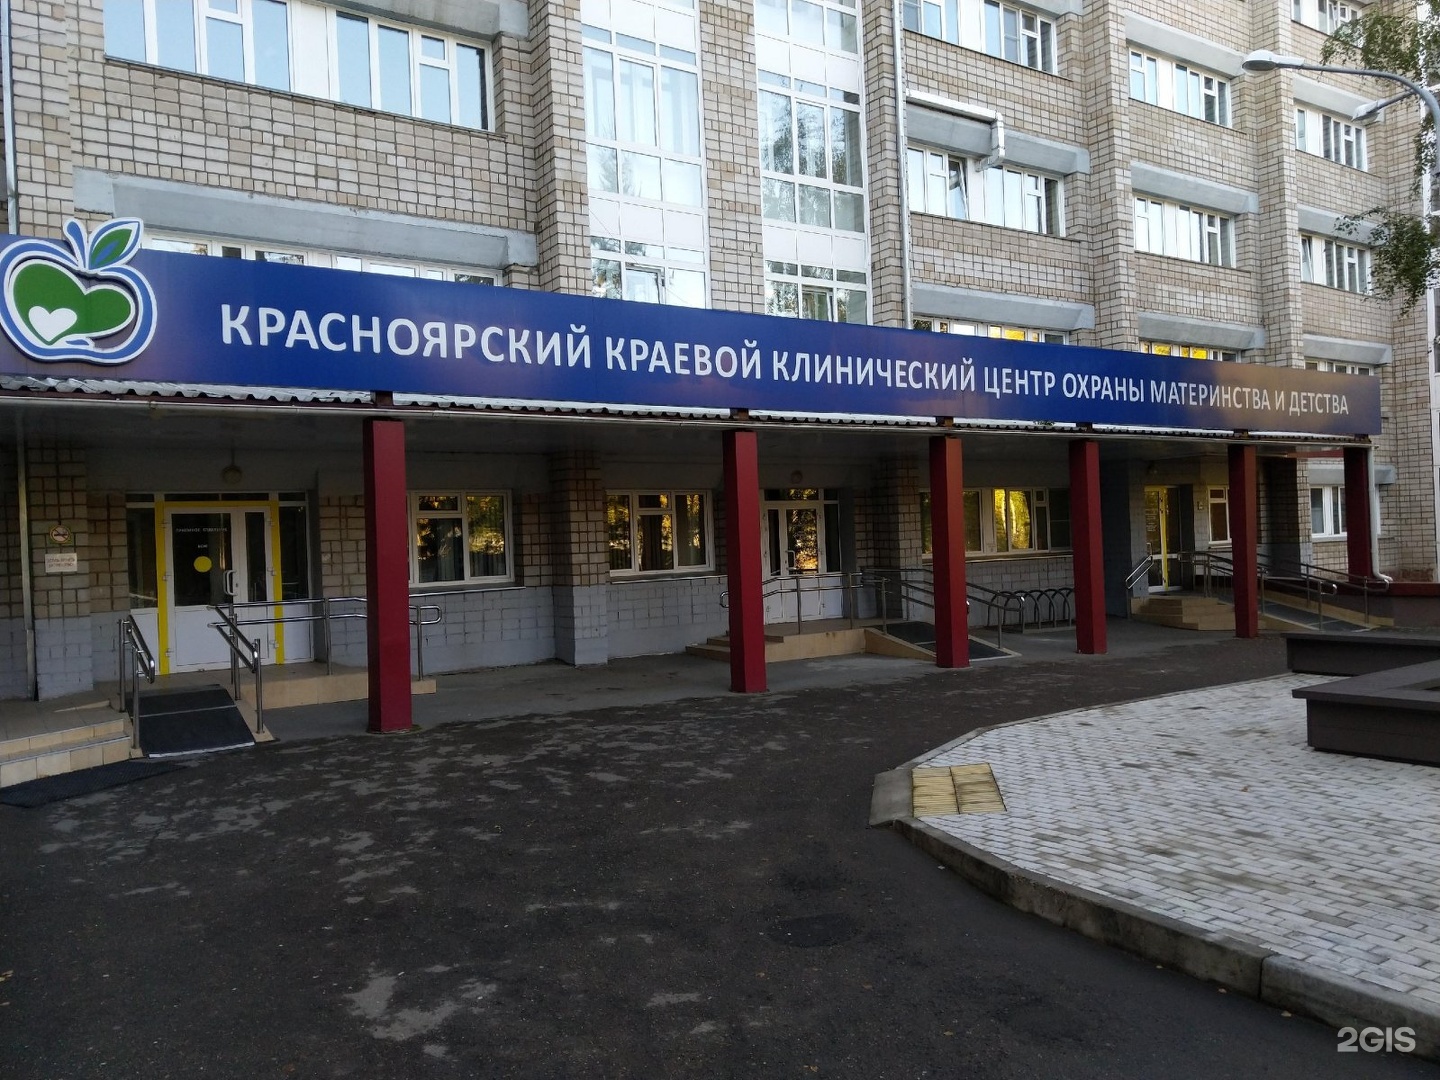 Красноярский краевой клинический центр охраны материнства и детства